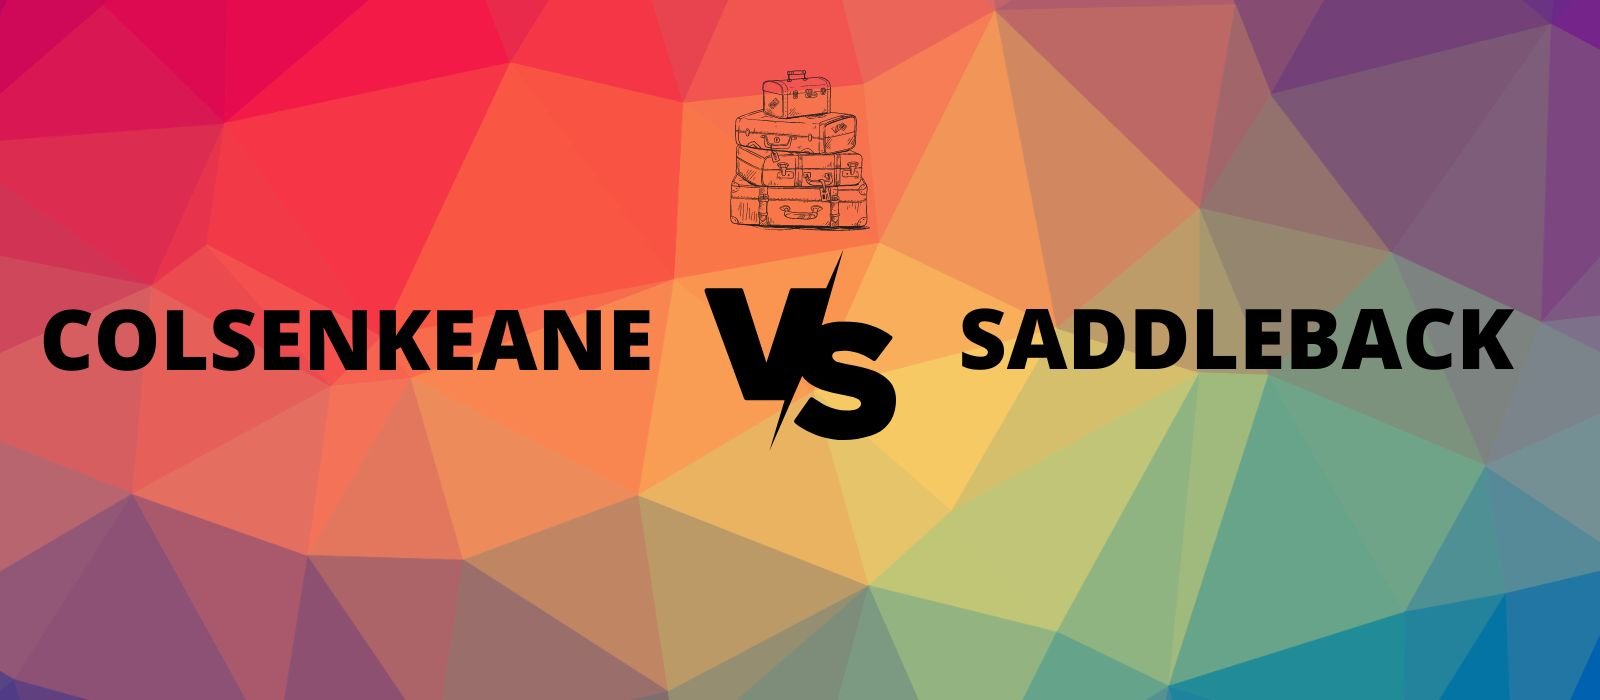 ColsenKeane vs Saddleback